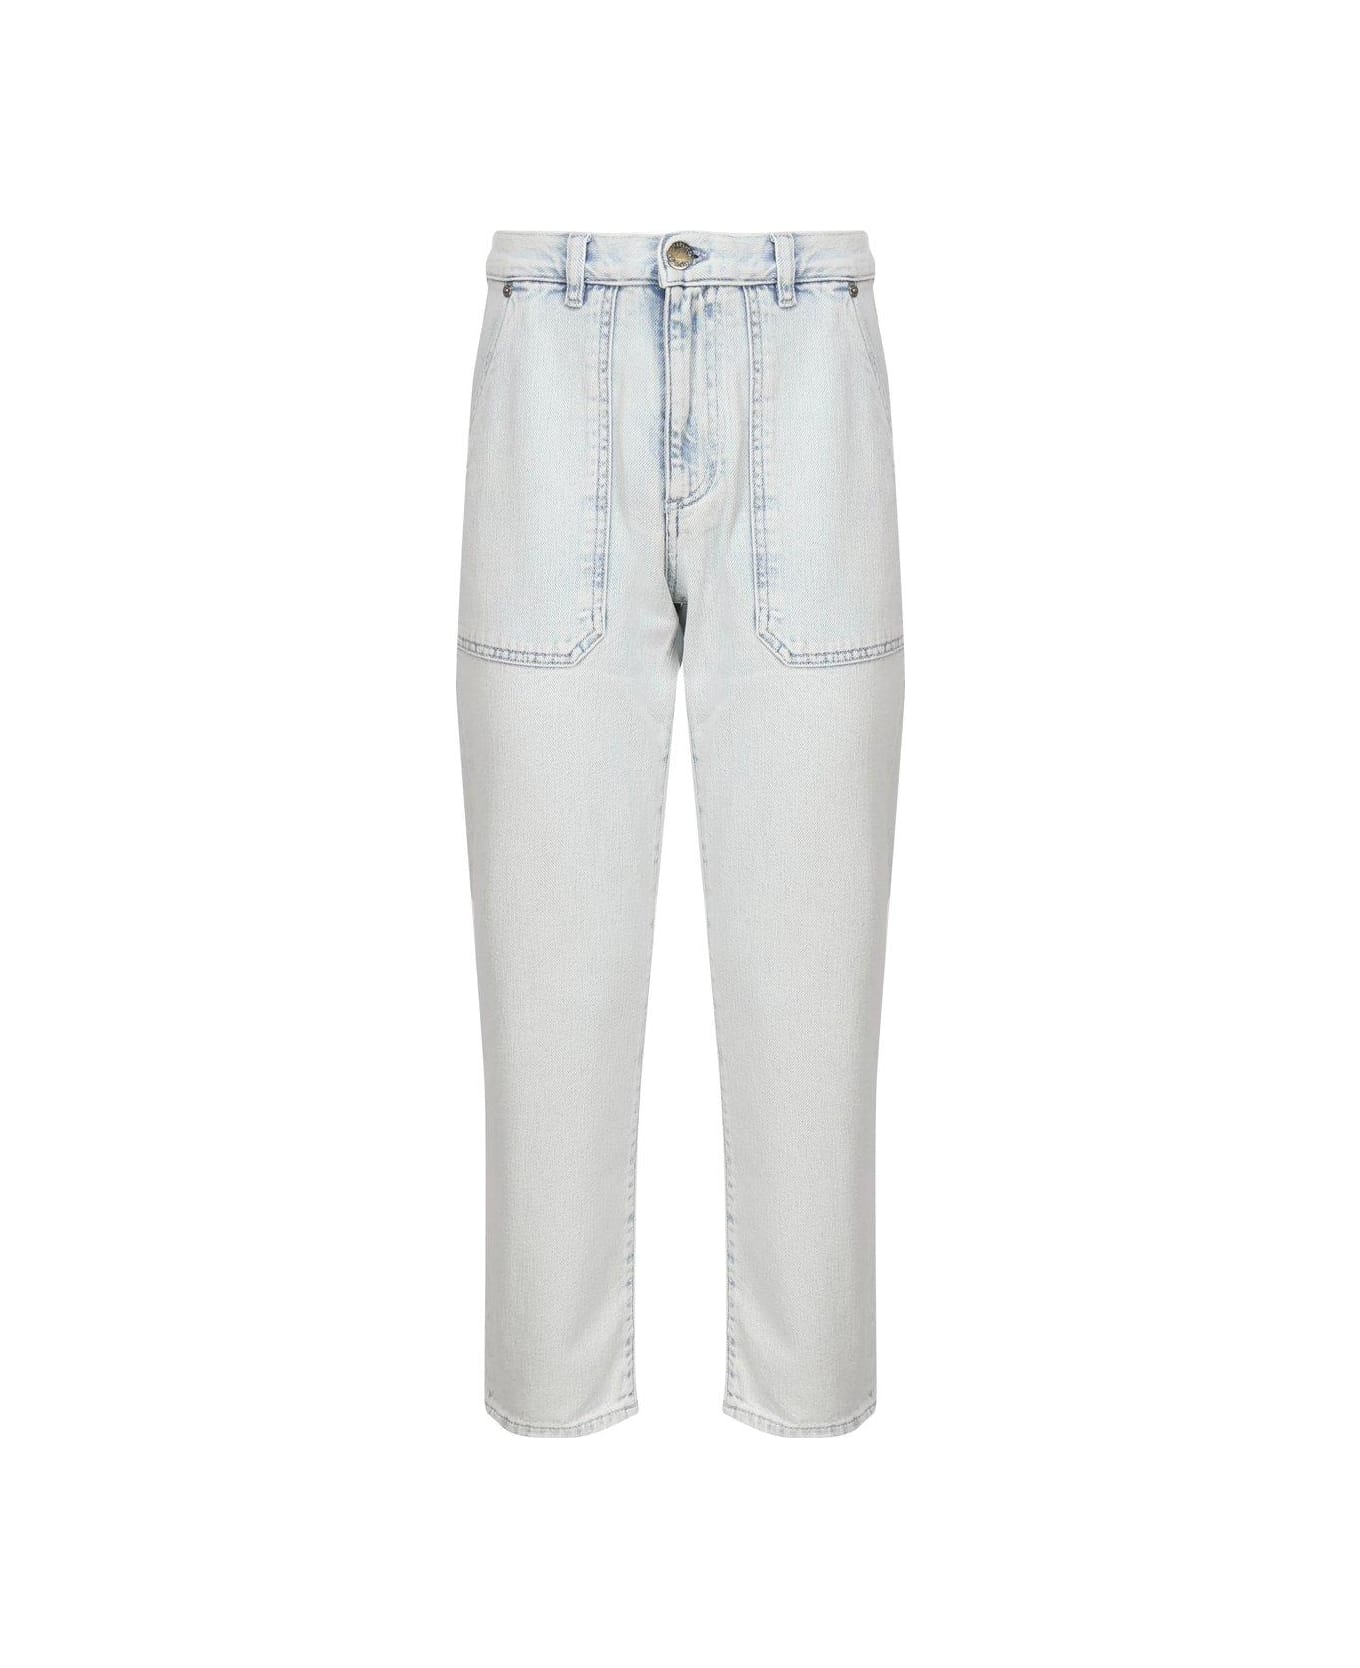 Pinko Straight Leg Jeans - White denim